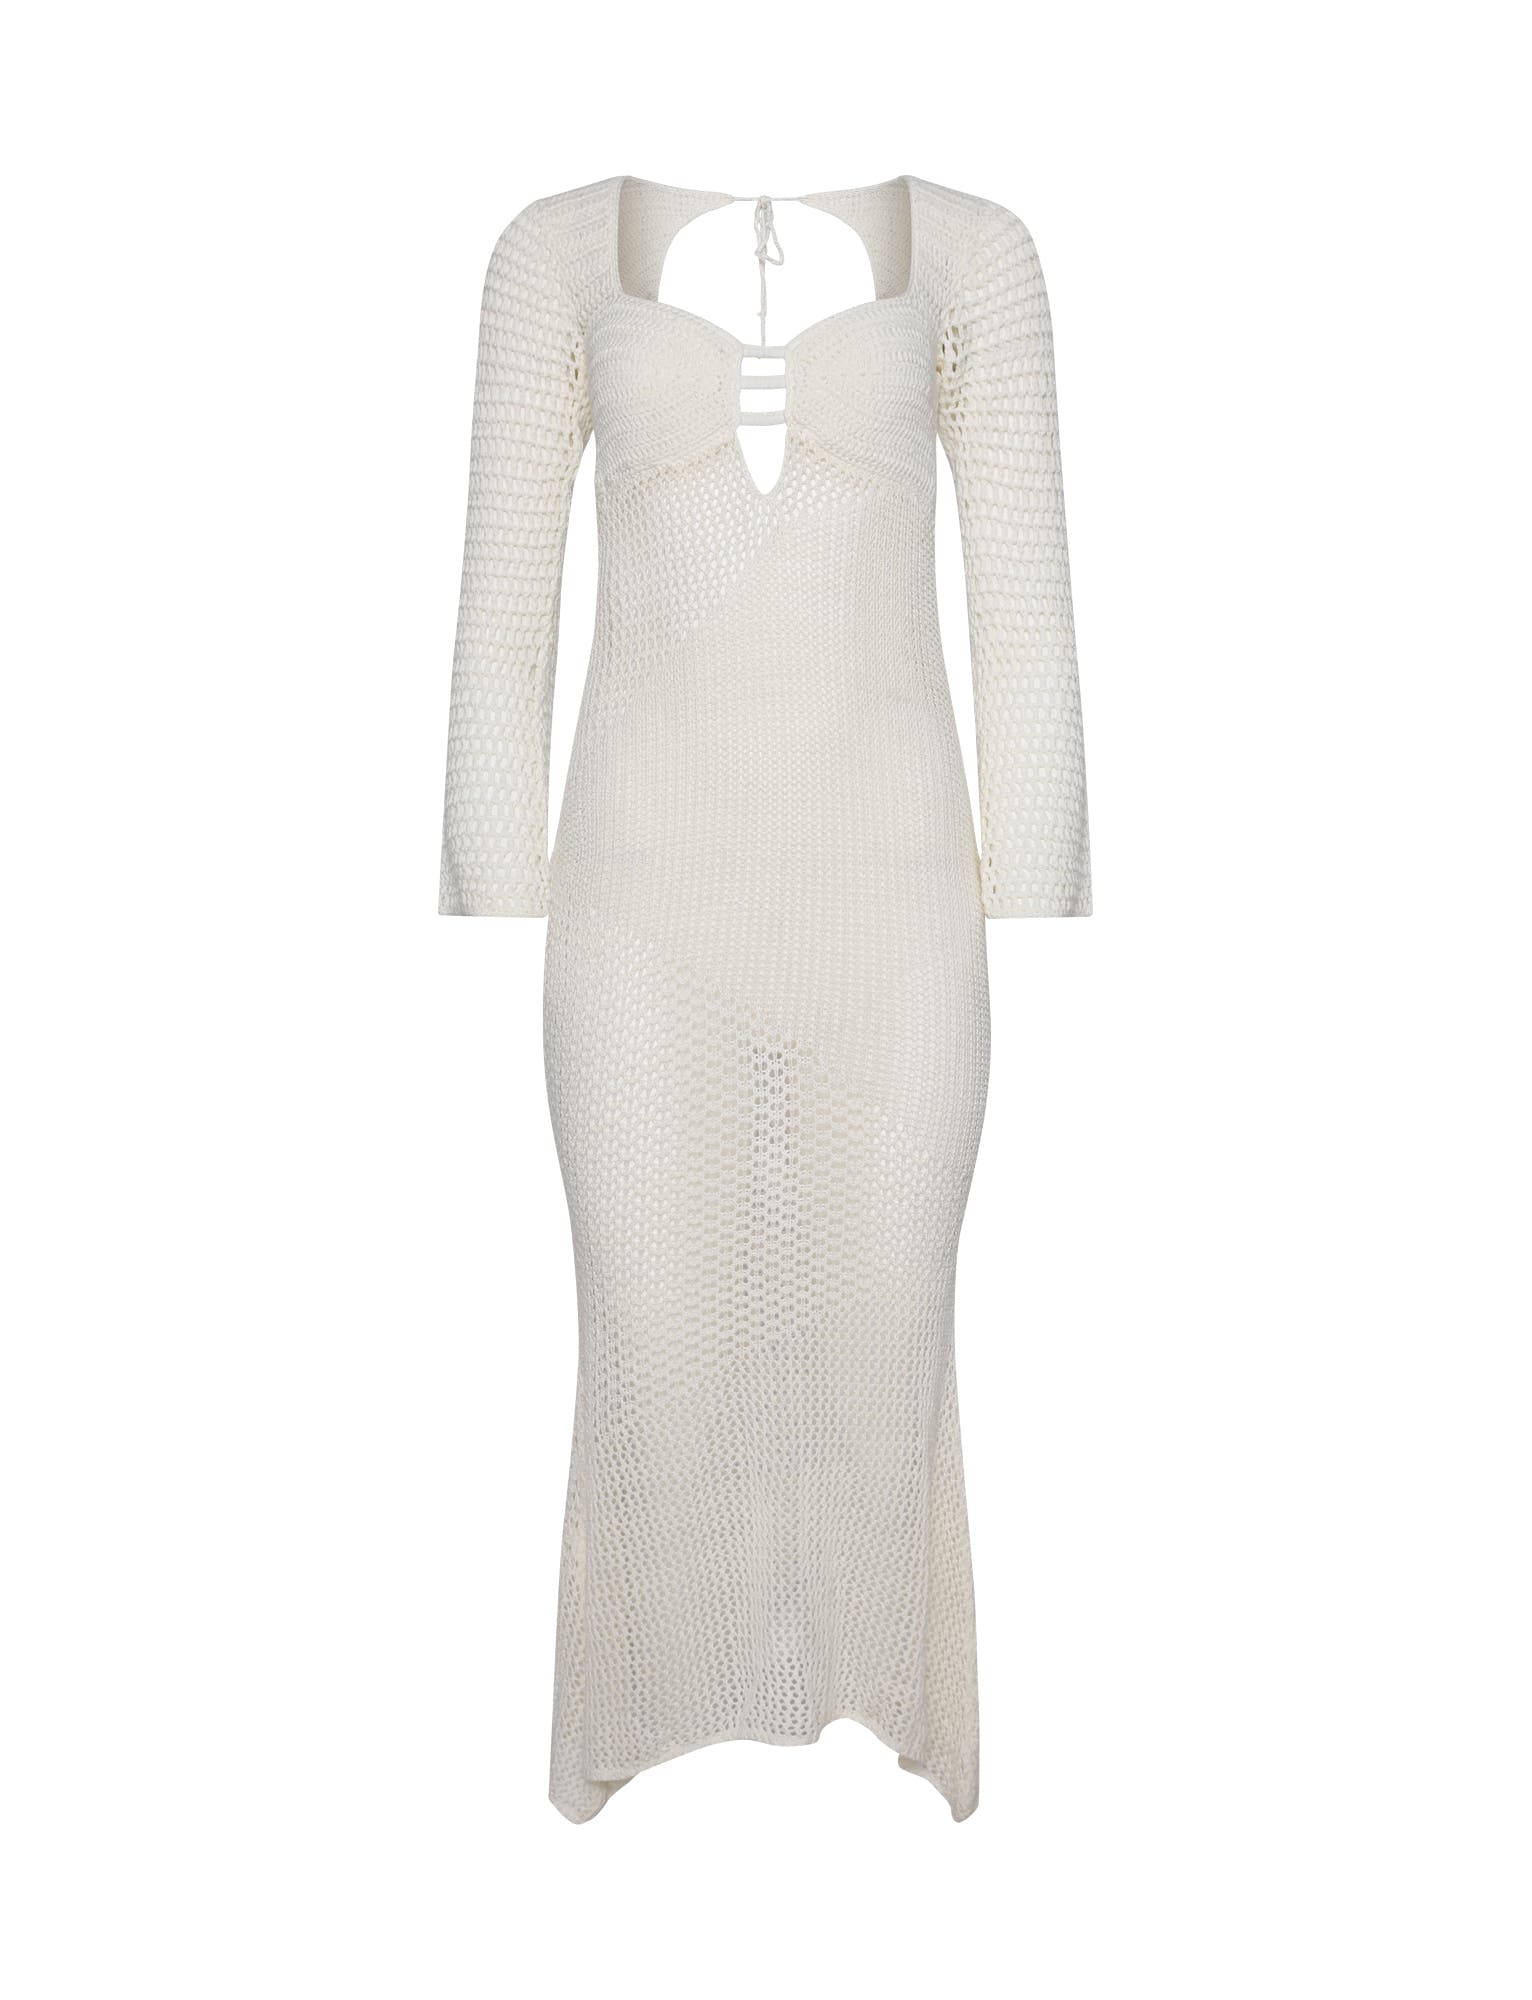 MACAULEY DRESS - WHITE : CREAM